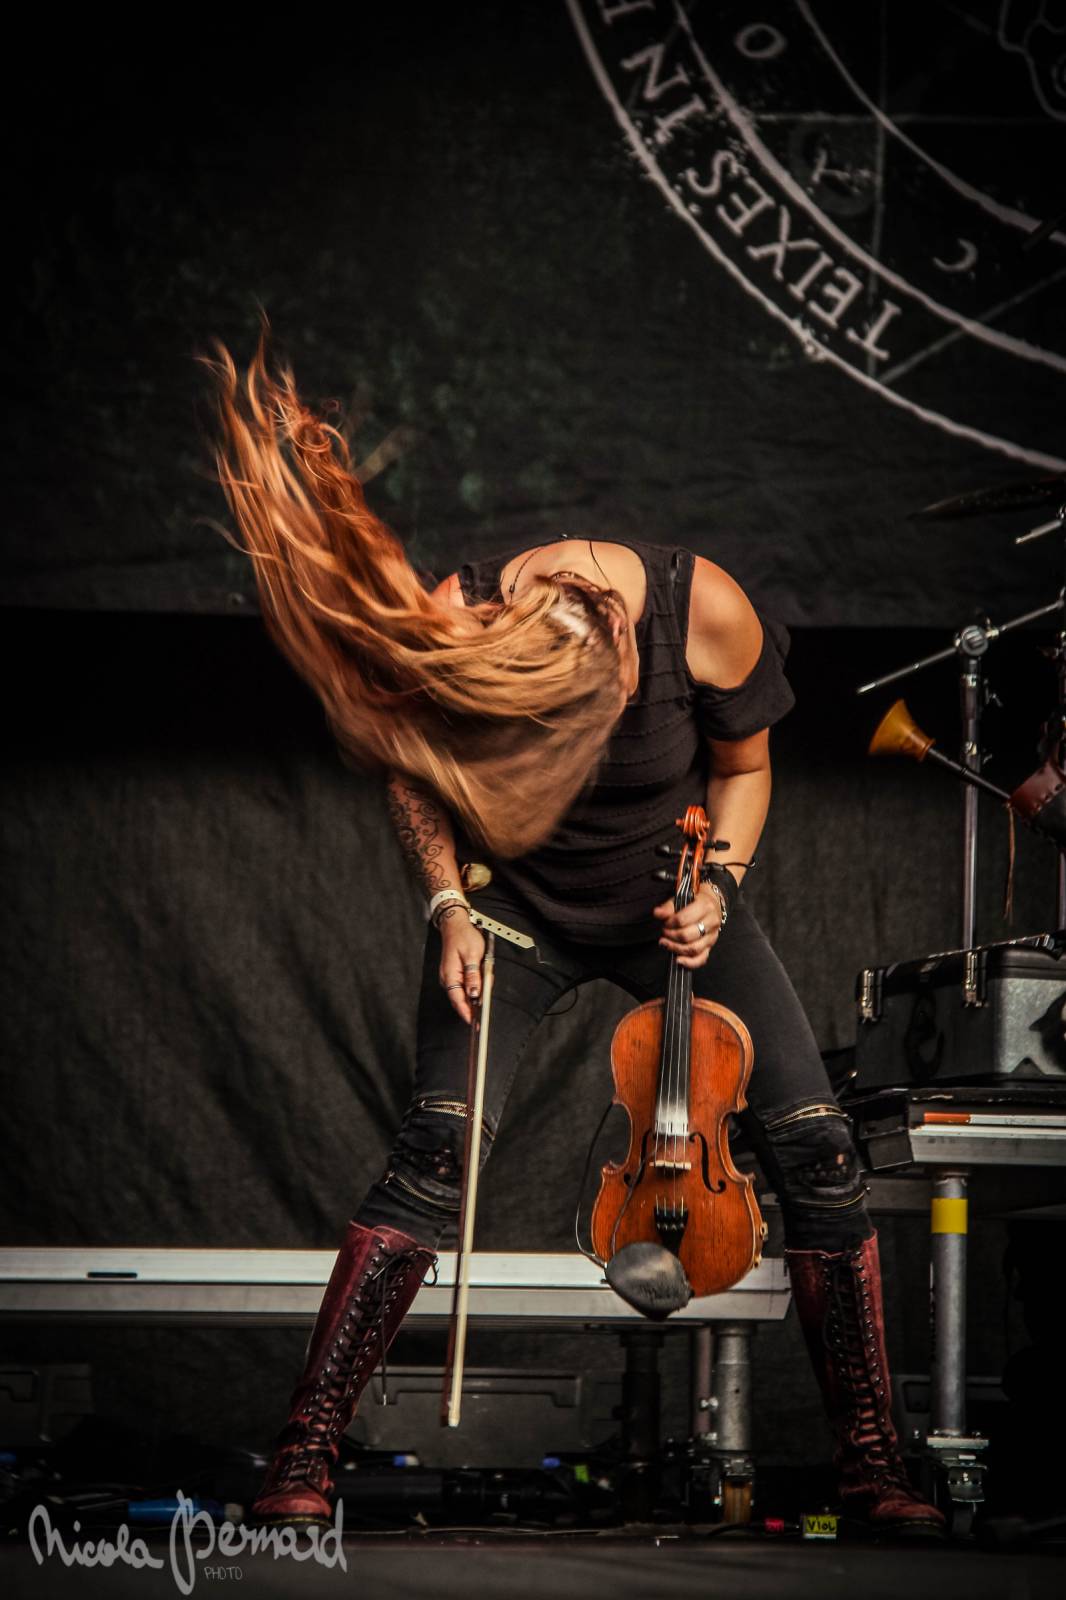 To nejlepší z třídenního Metalfestu: V Plzni běsnili Nightwish, Apocalyptica, Accept a další